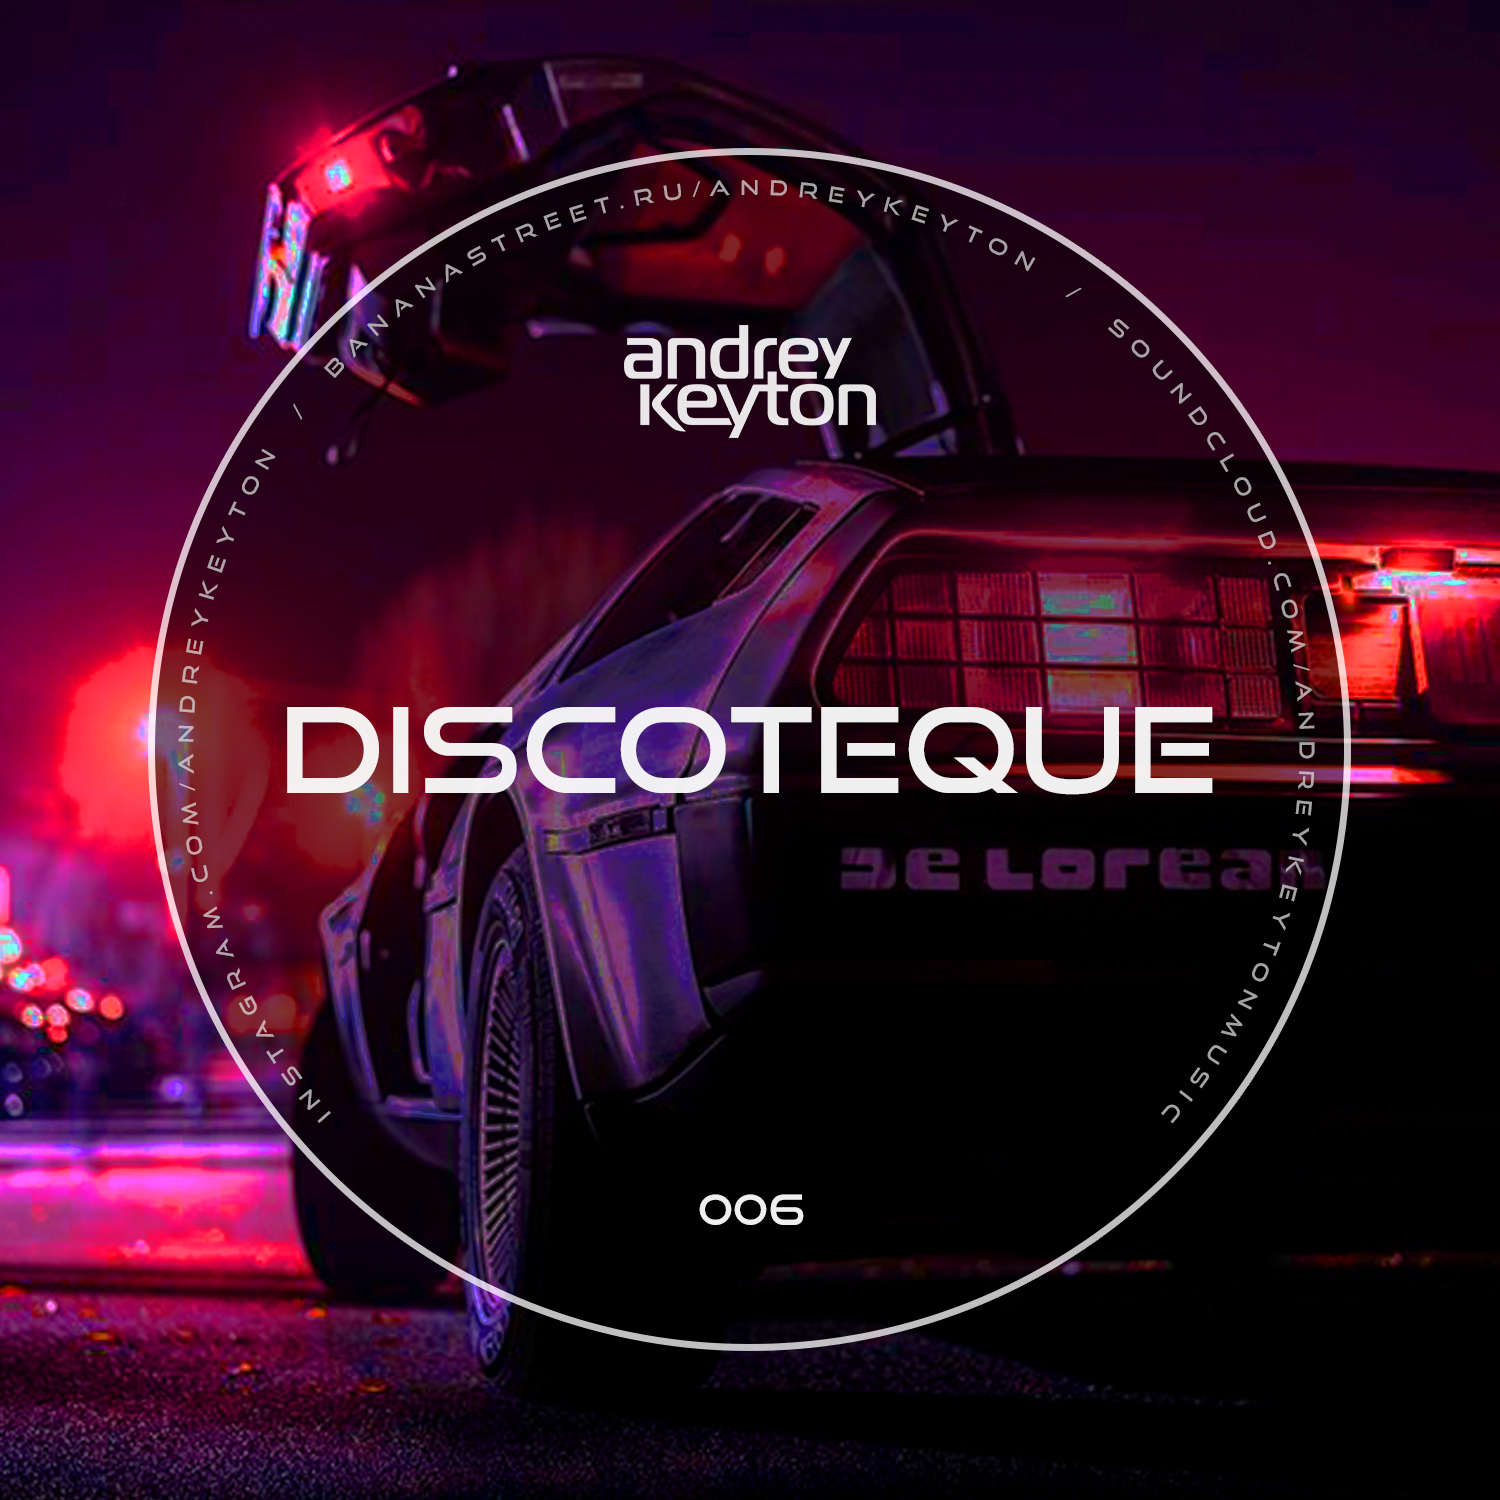 Discoteque. DJ don Discoteque. Andrey keyton